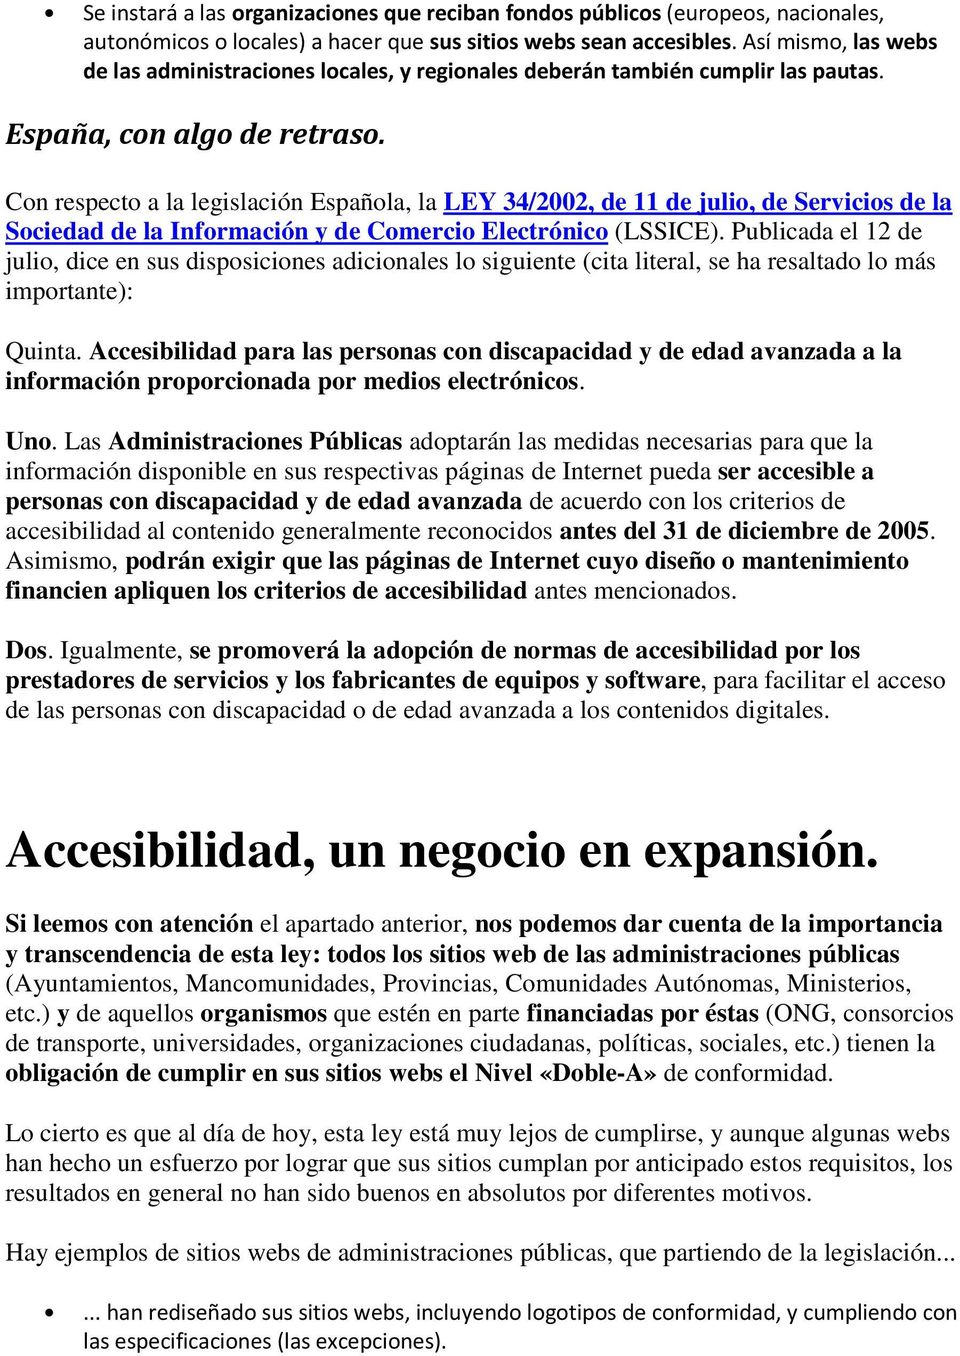 Con respecto a la legislación Española, la LEY 34/2002, de 11 de julio, de Servicios de la Sociedad de la Información y de Comercio Electrónico (LSSICE).